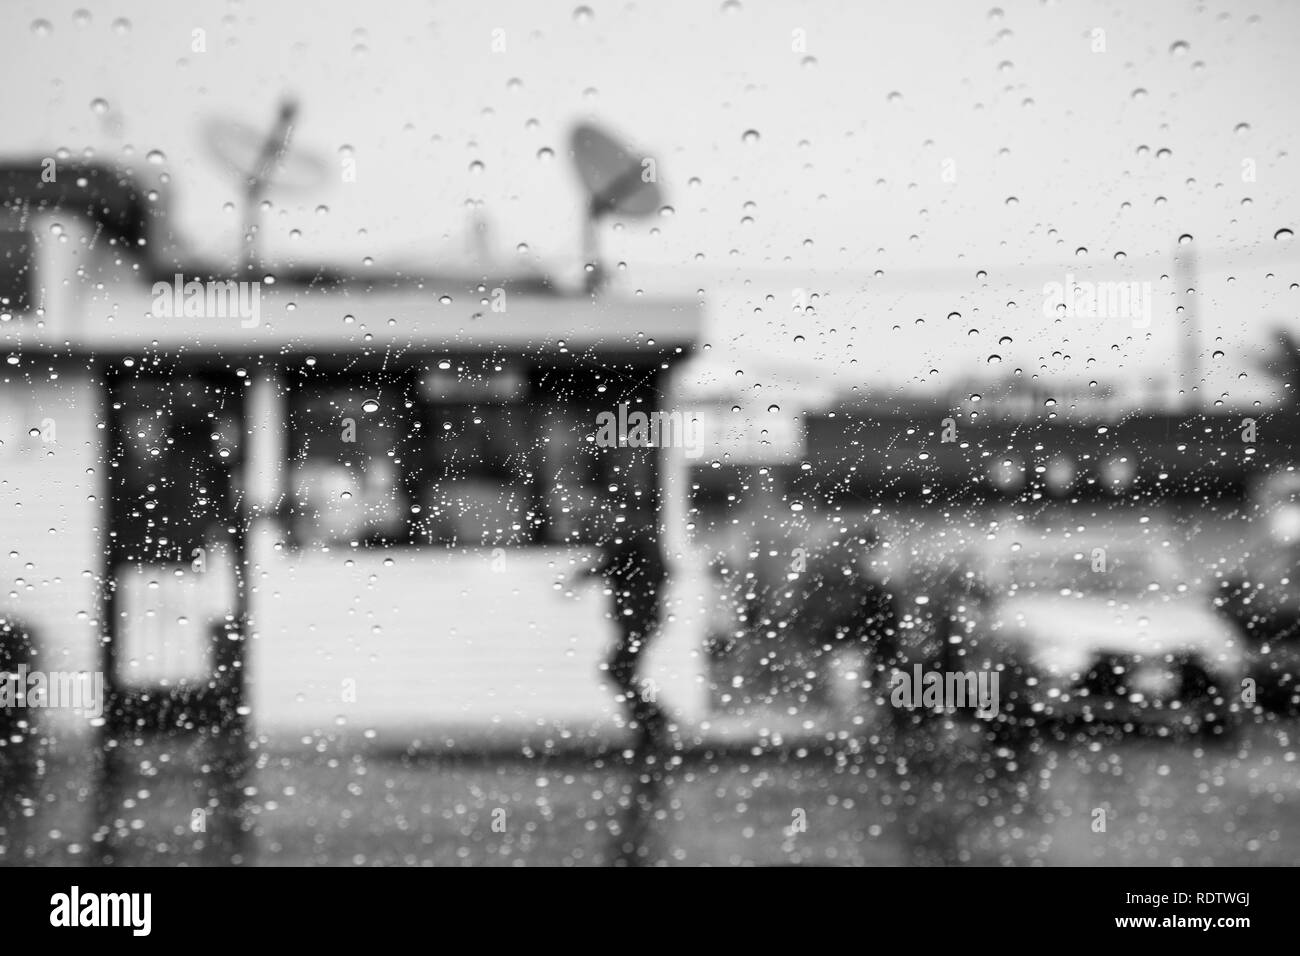 Gouttes de pluie sur le pare-brise ; personne qui marche à l'extérieur par temps de pluie à l'arrière-plan ; Californie ; noir et blanc Banque D'Images